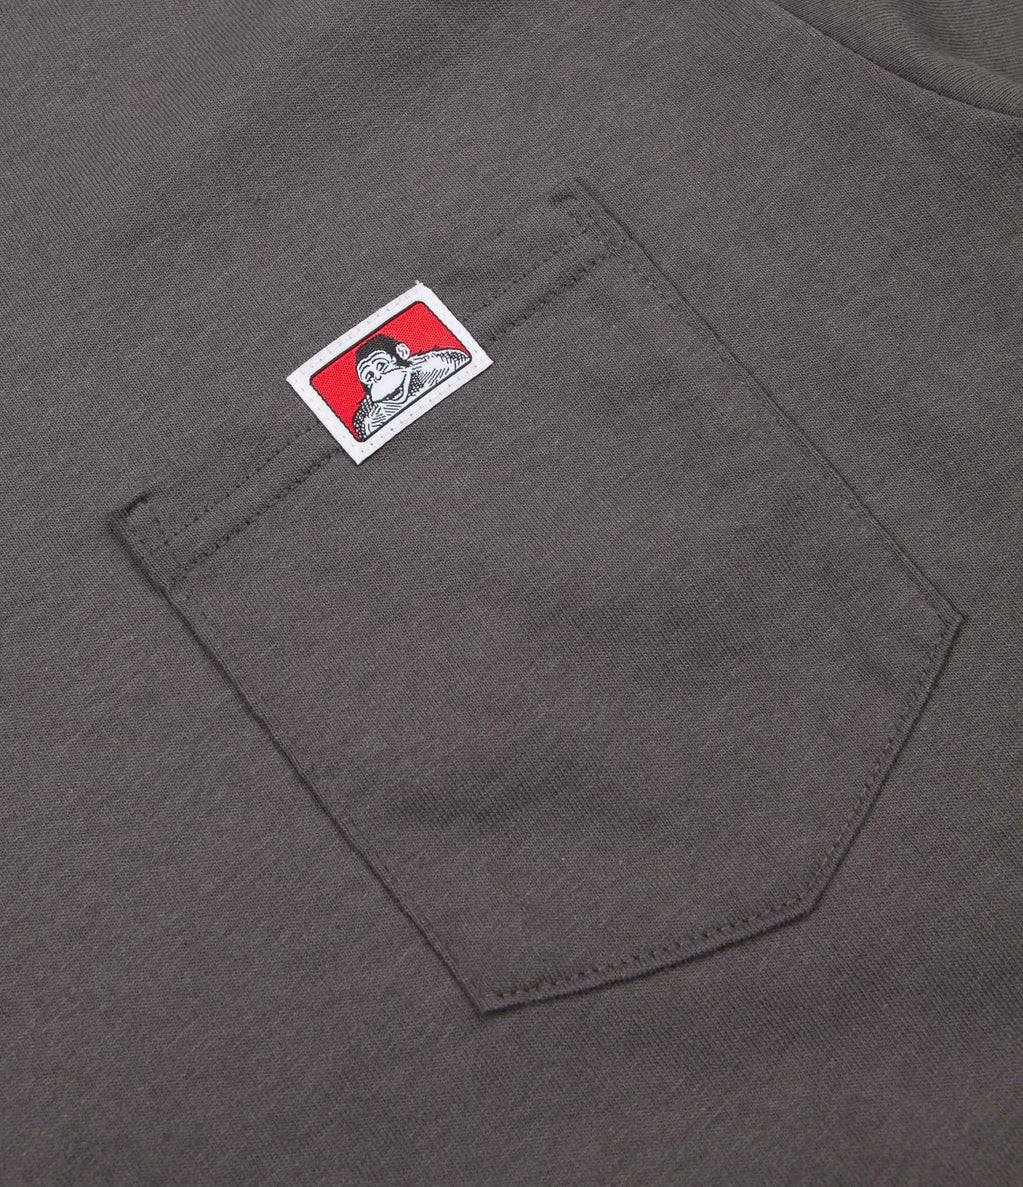 Ben Davis Pocket T-Shirt - Charcoal | Flatspot